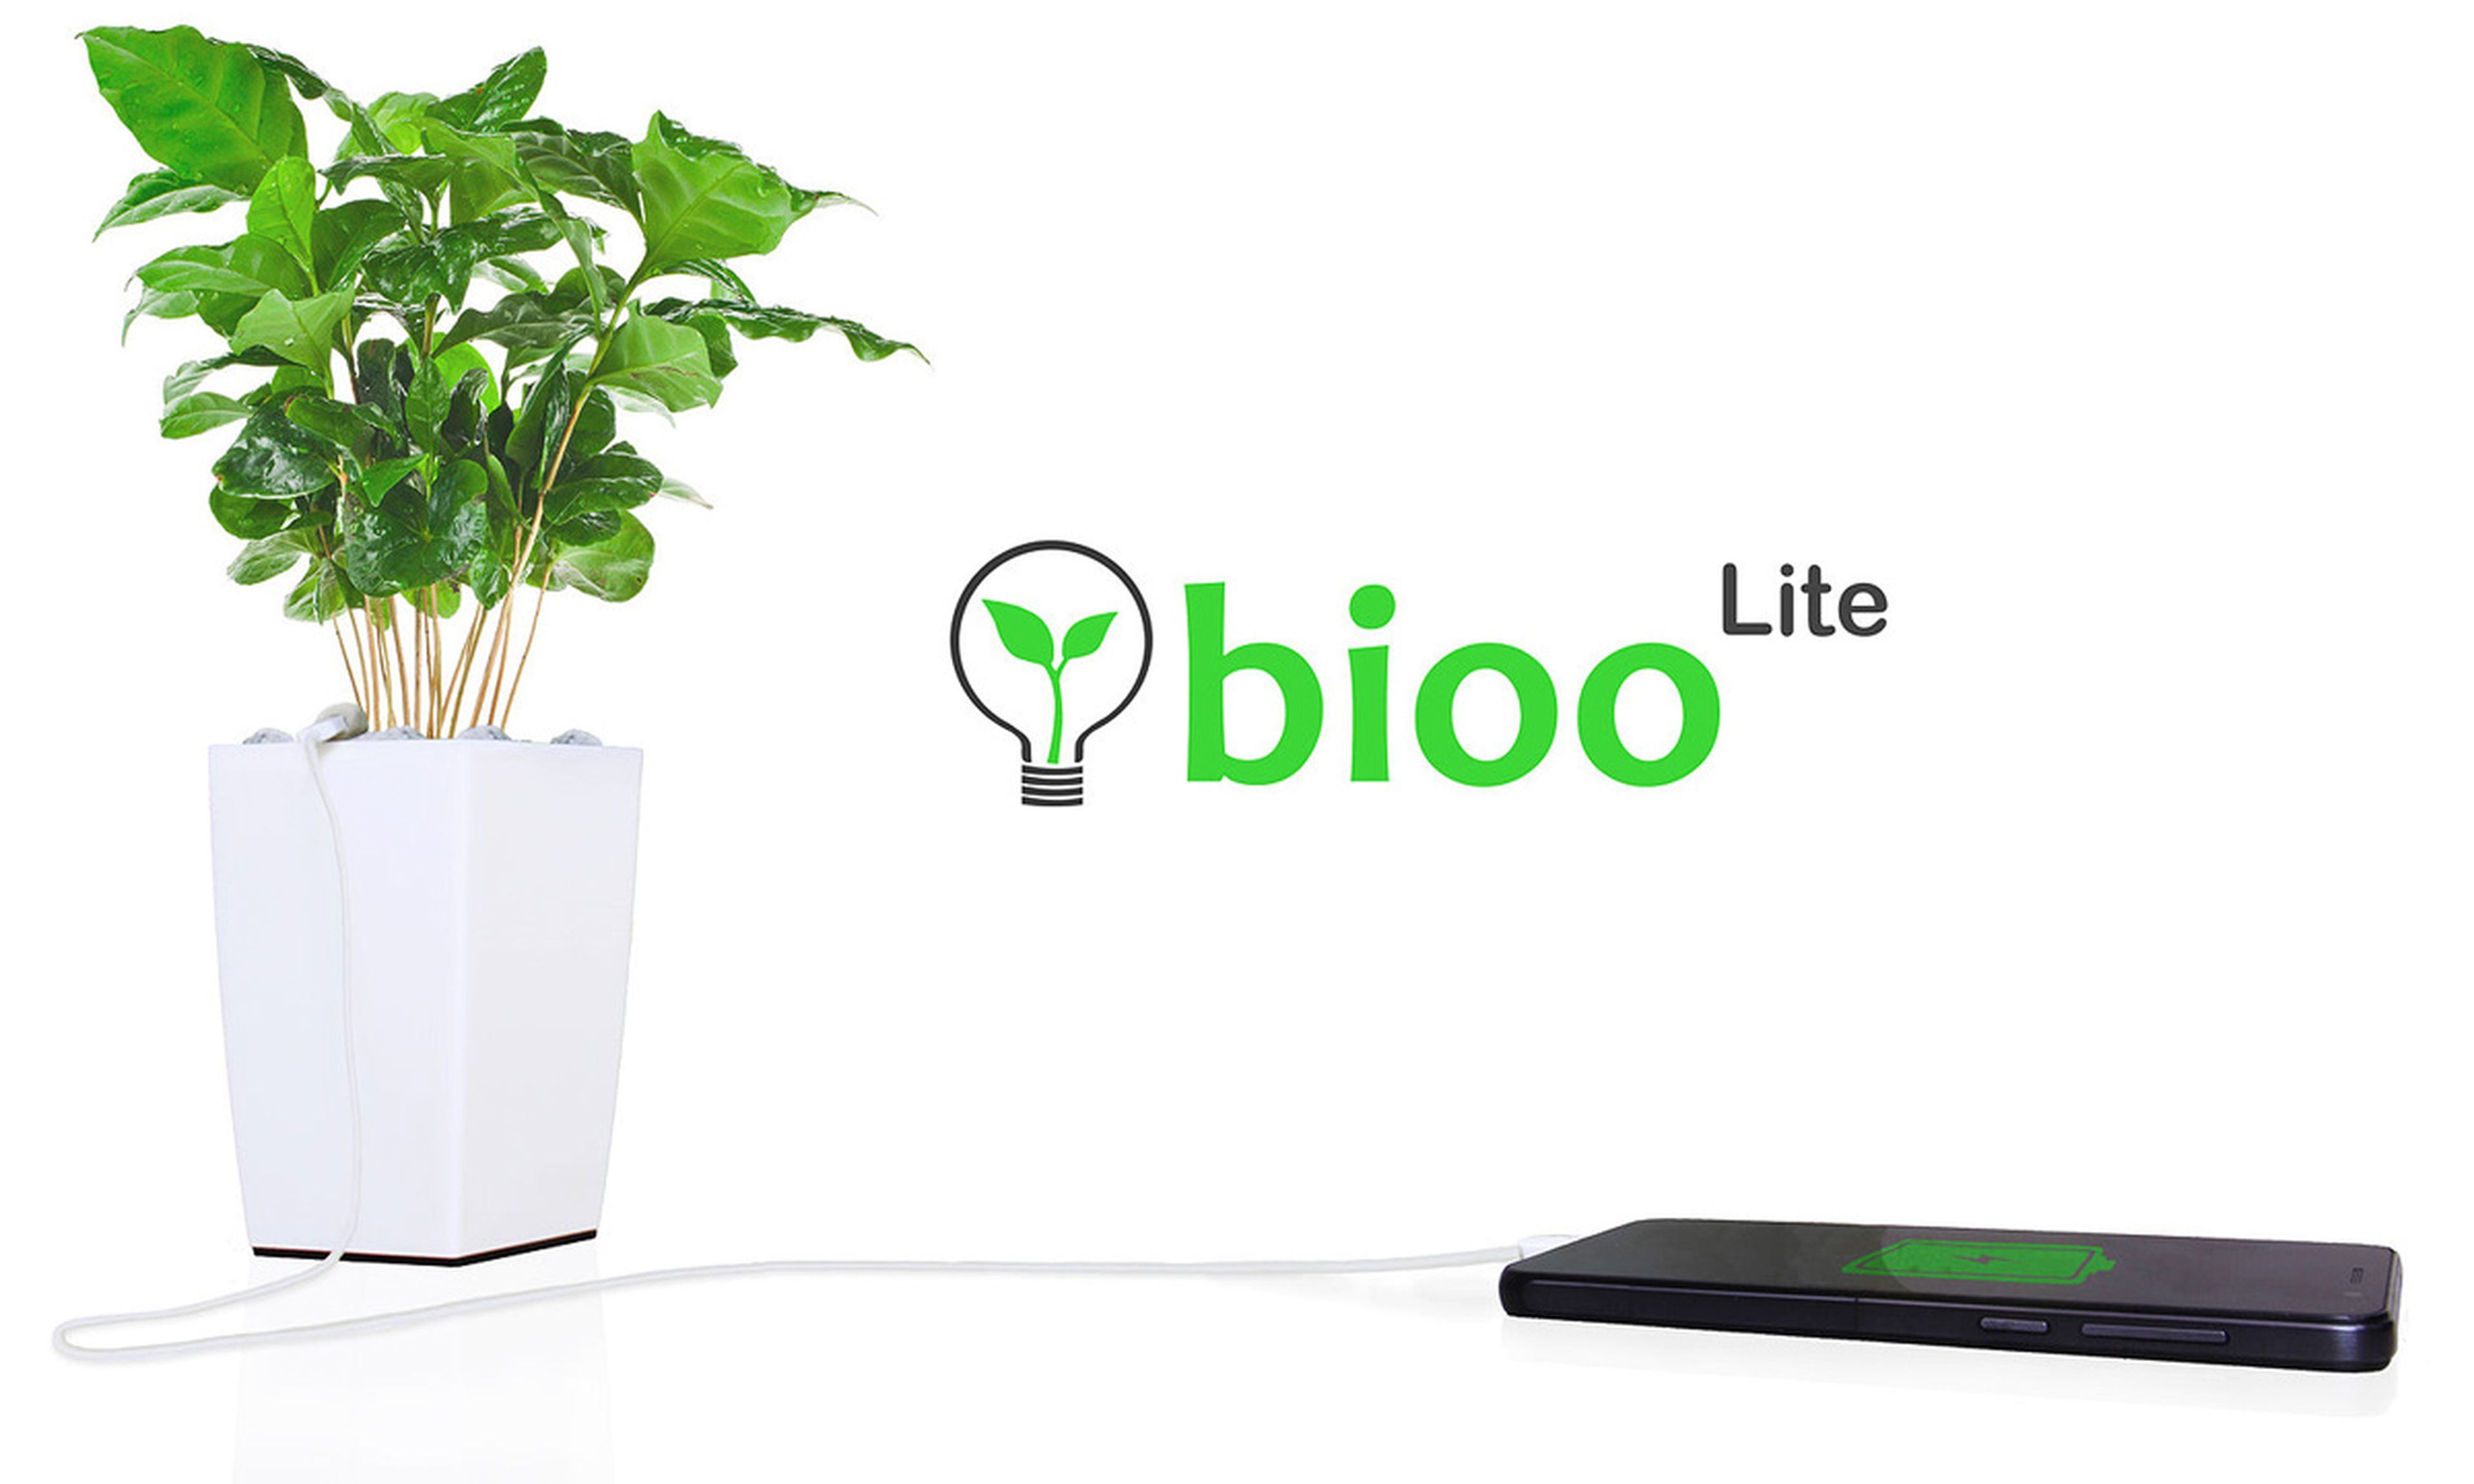 Bioo startup